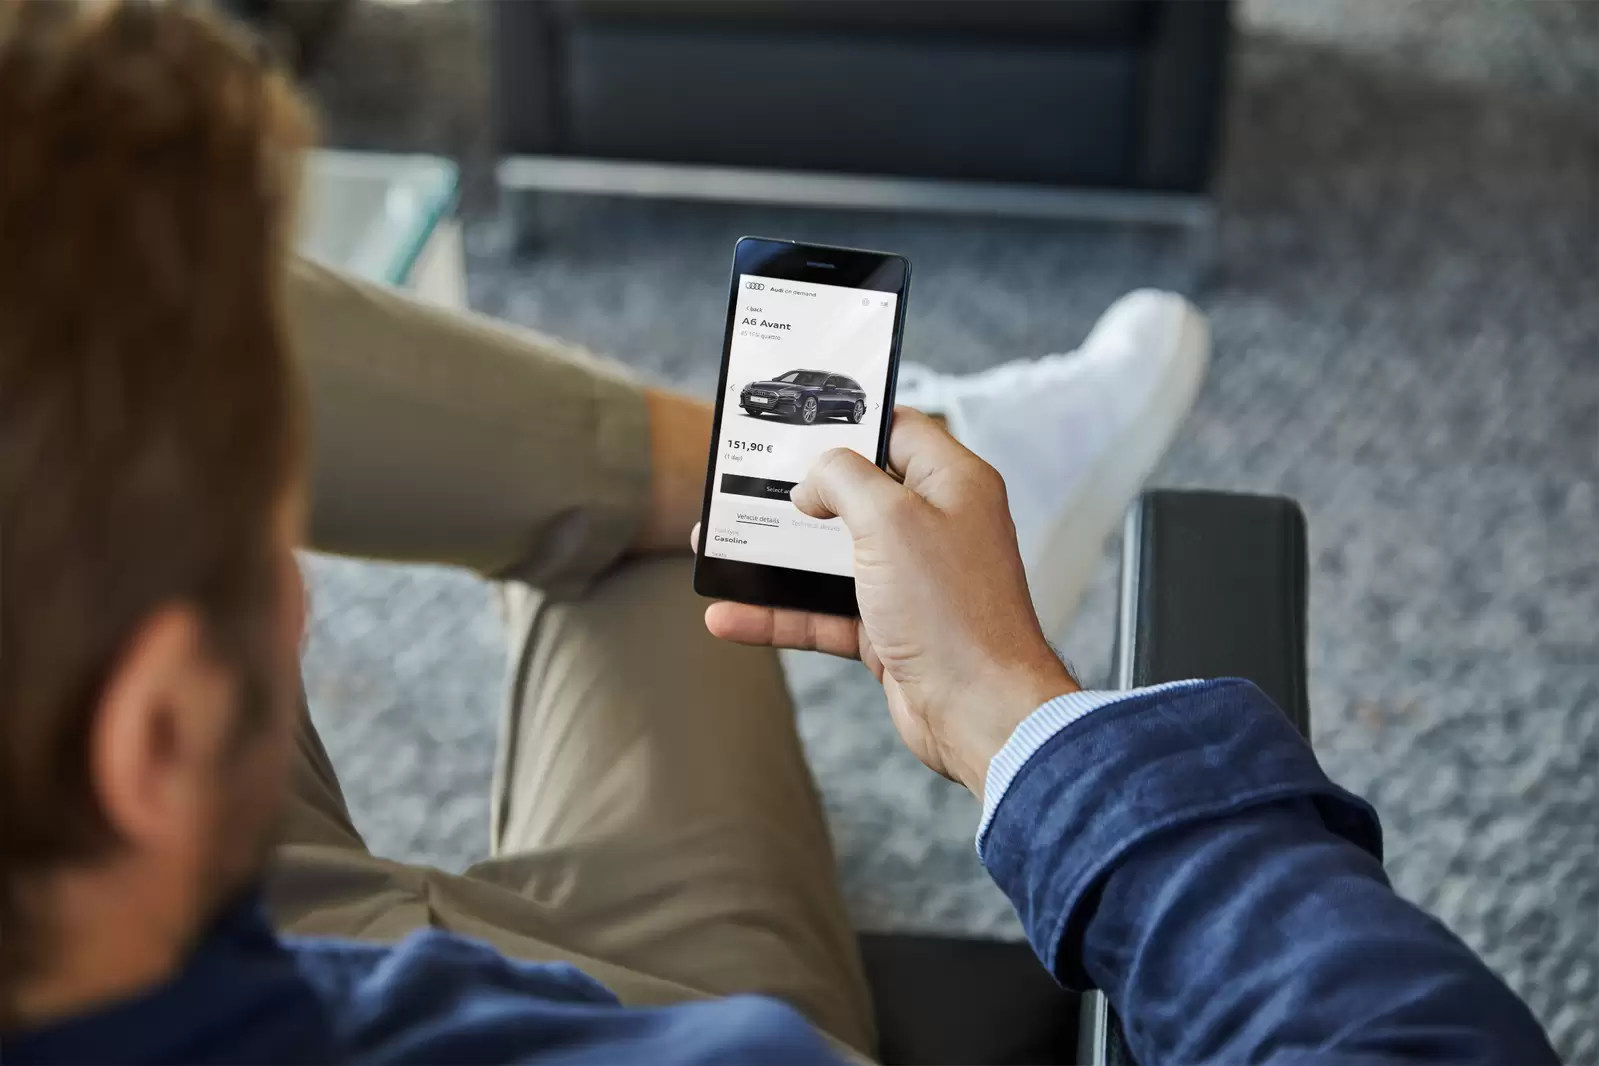 Mann mit Smartphone Audi on demand auf Display